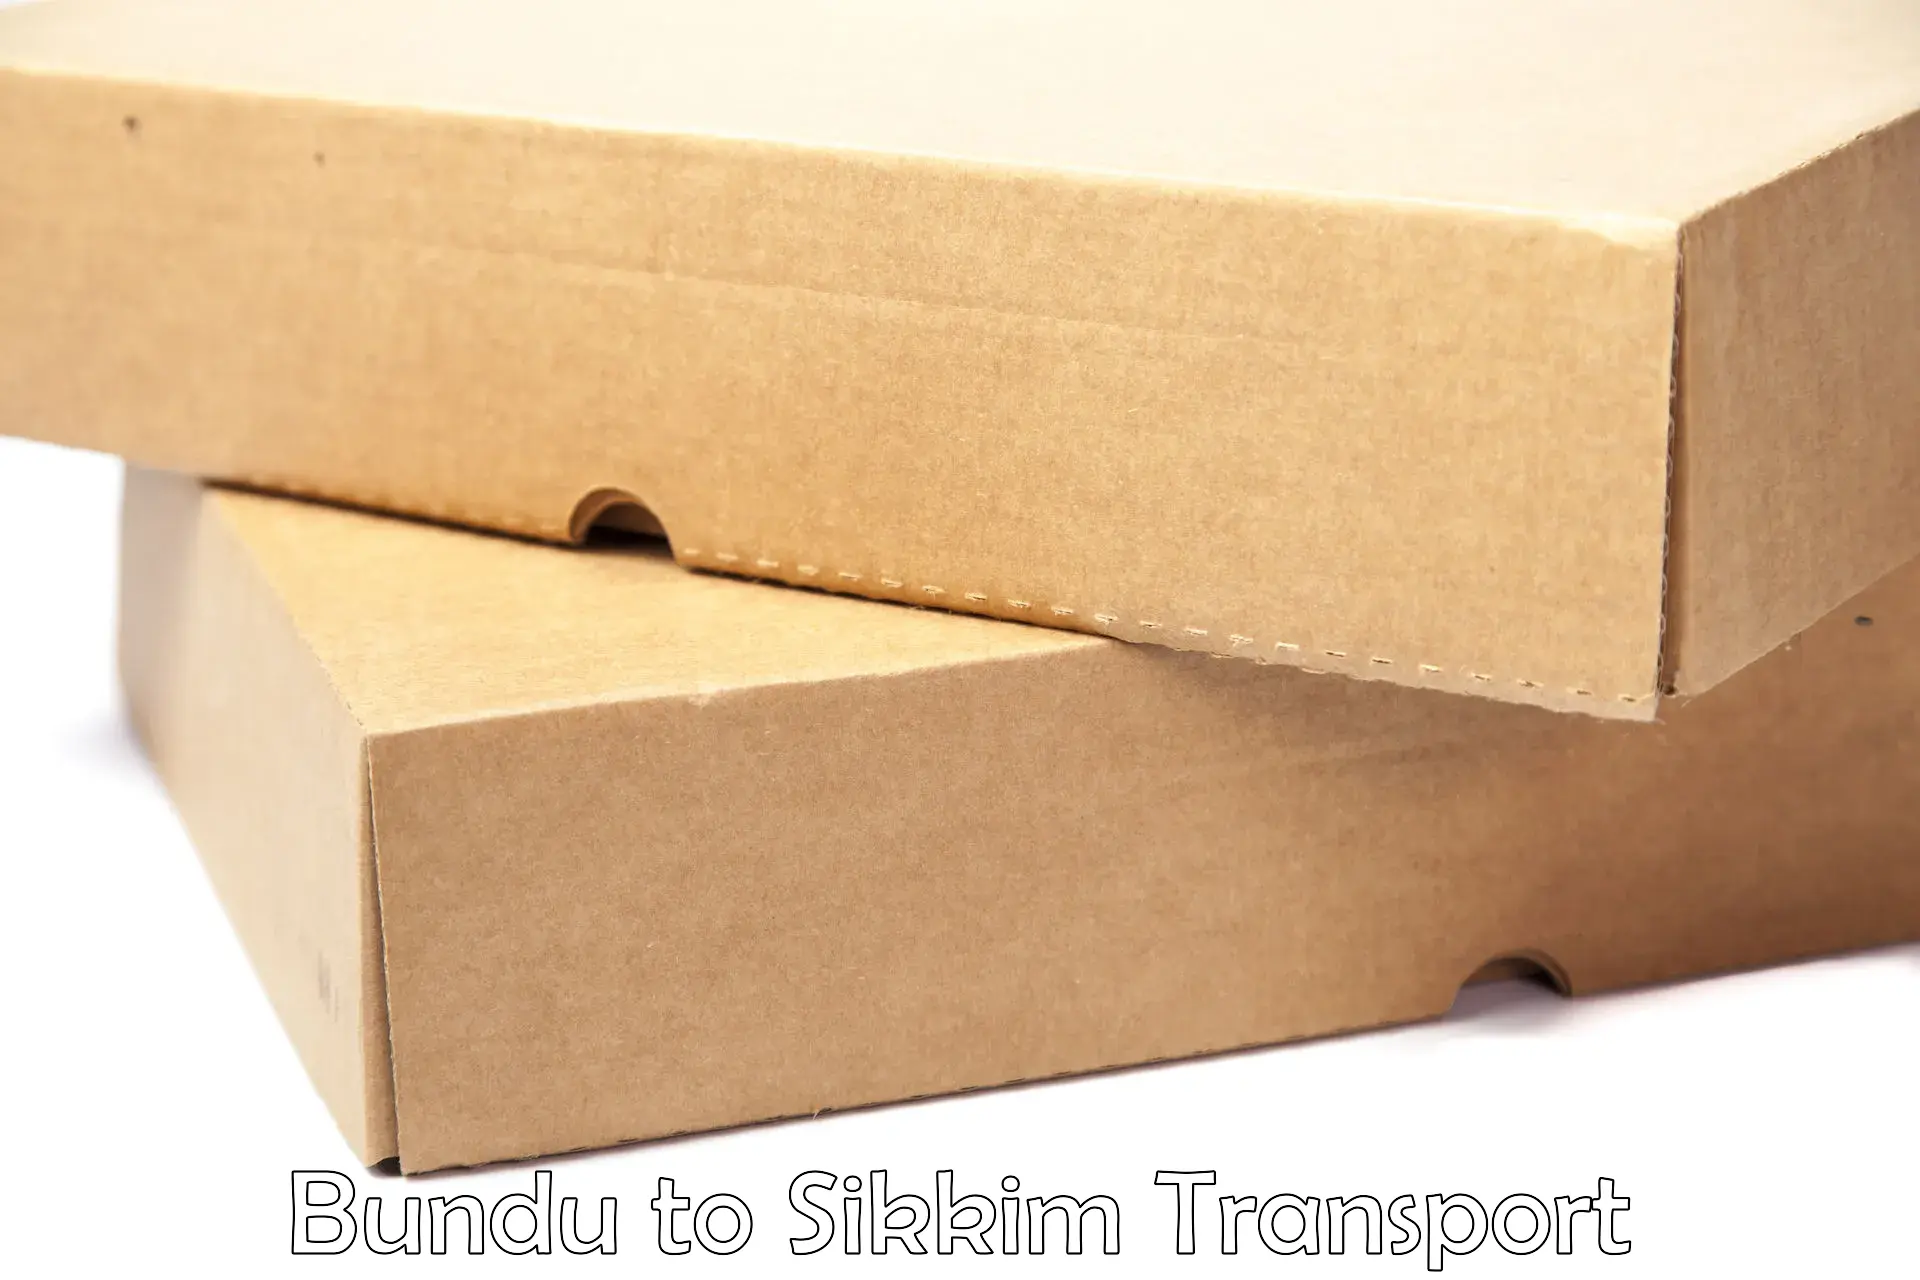 Cargo transport services in Bundu to Geyzing